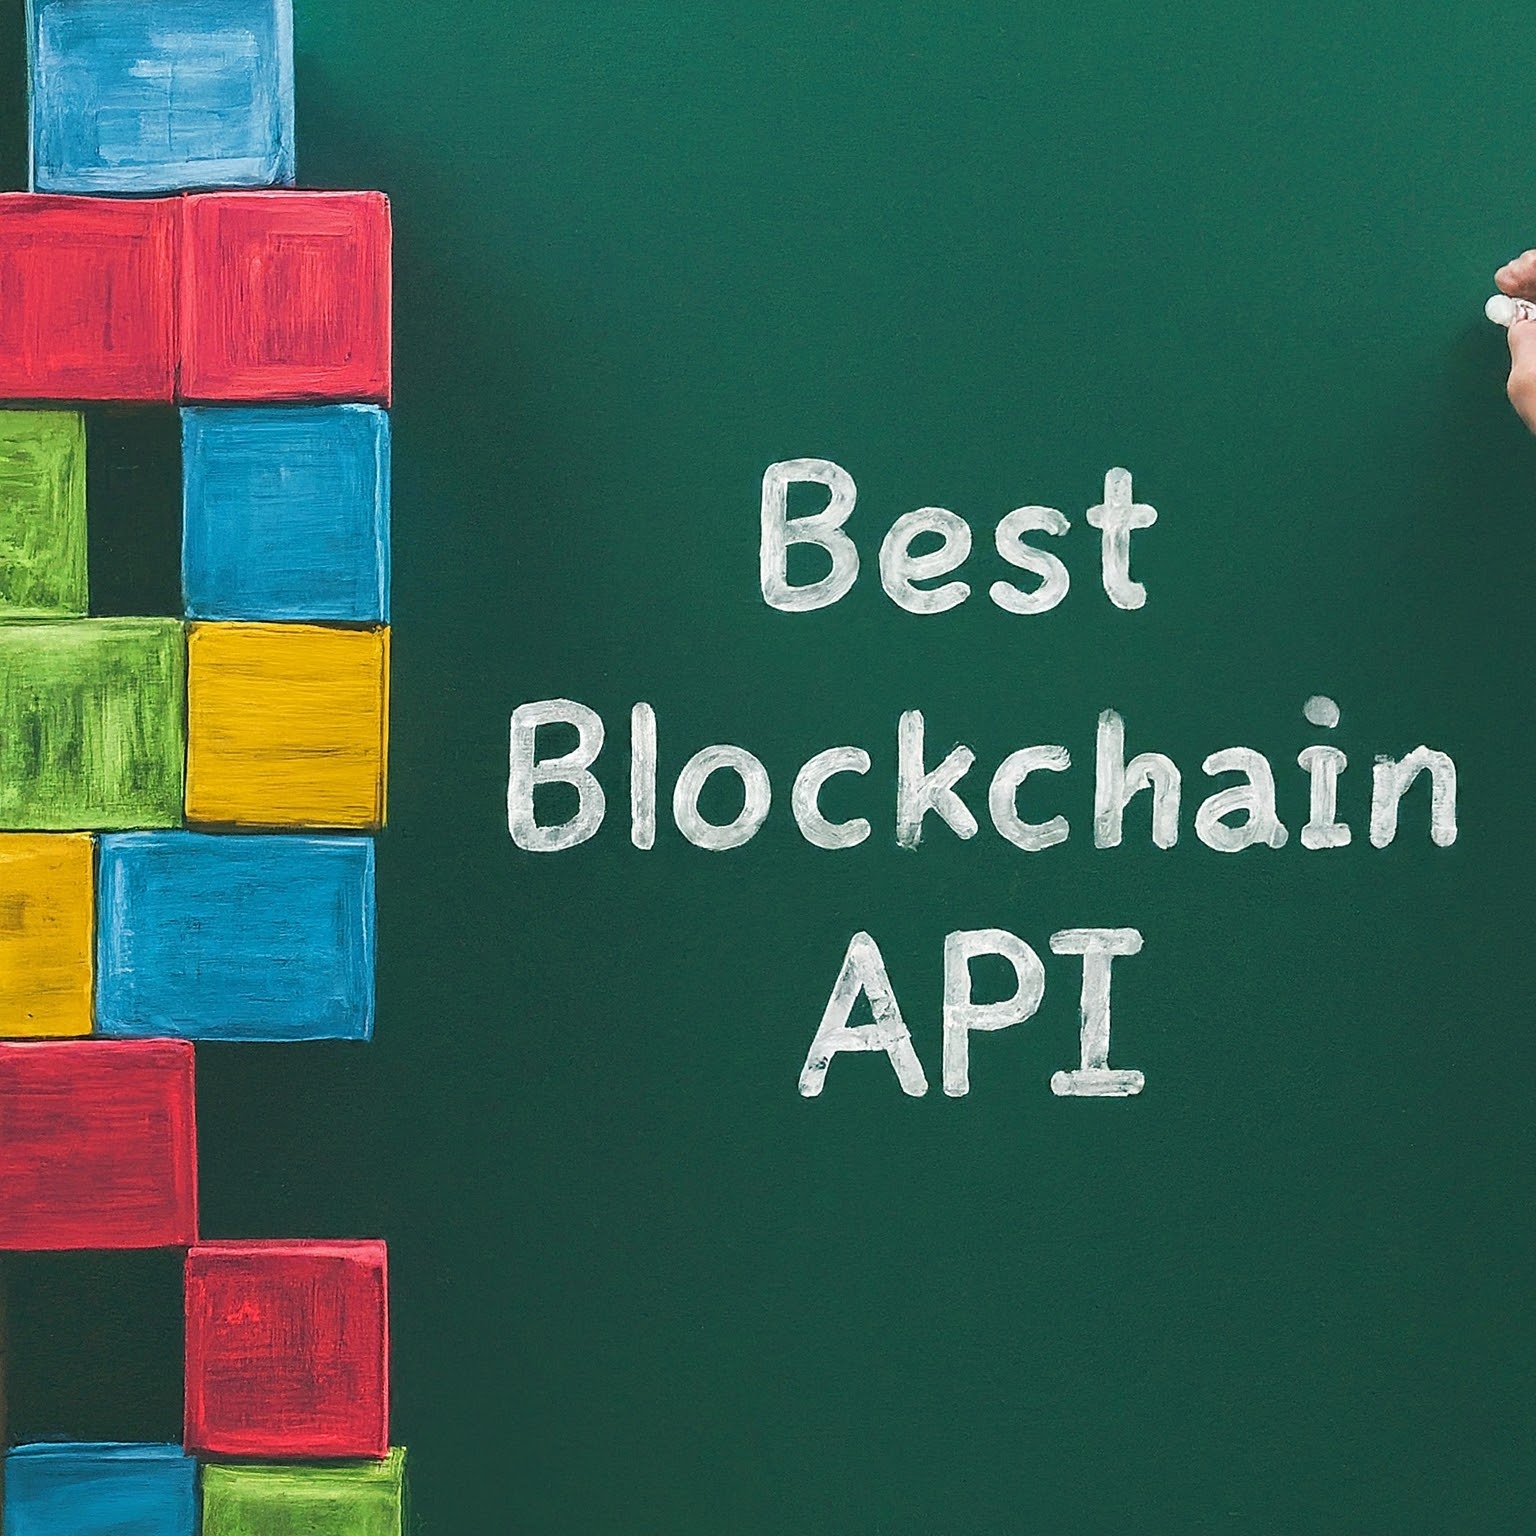 Best Blockchain APIs